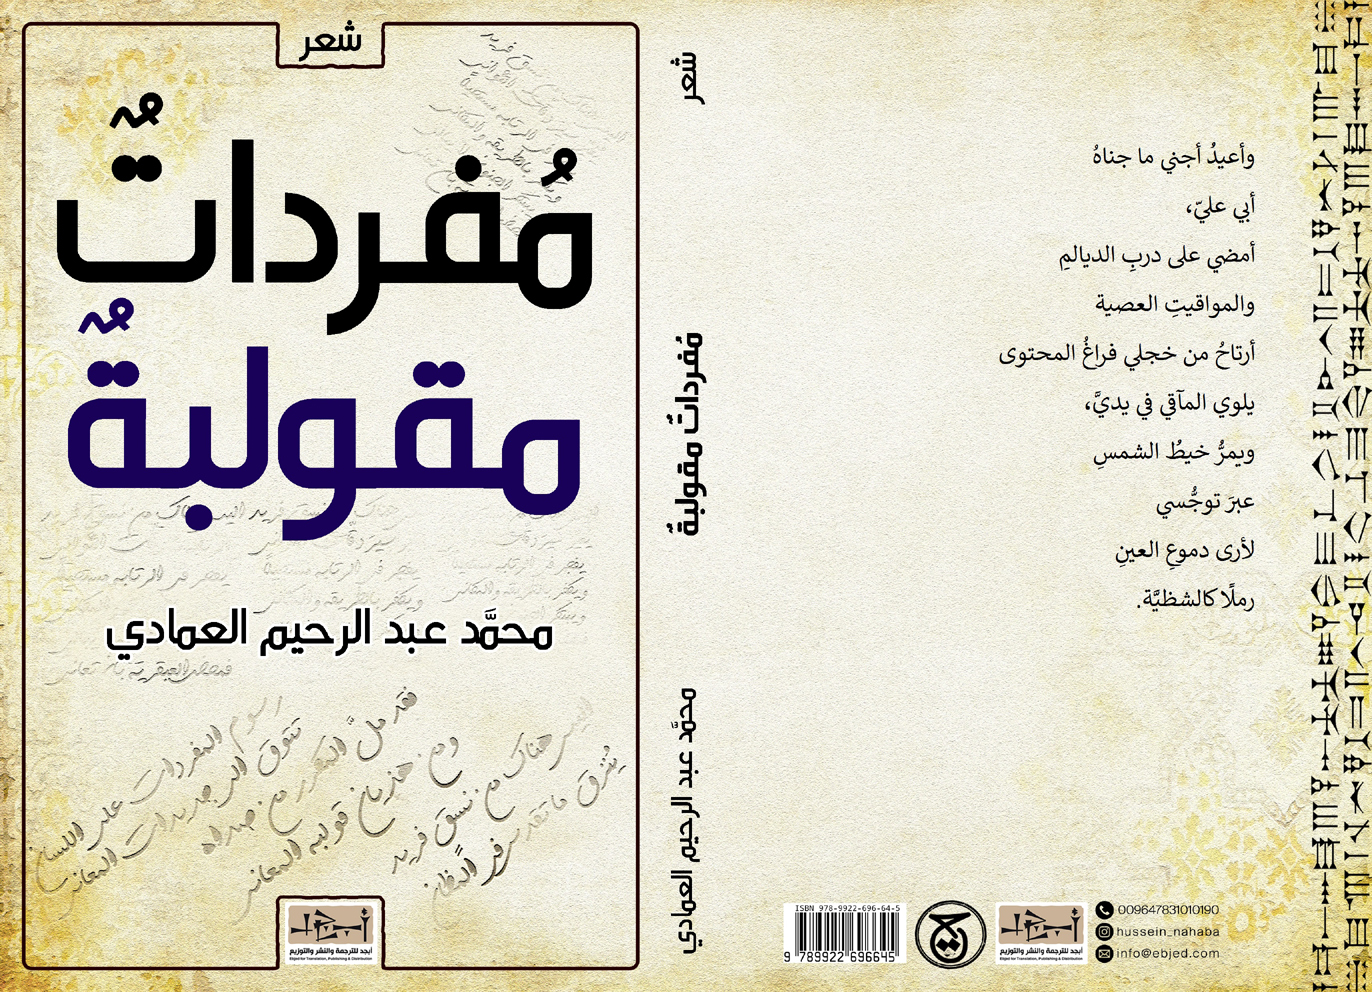  عنوان الكتاب: مفرداتٌ مقولبةٌ تأليف: محمَّد عبدالرحيم العمادي التصنيف: مجموعة شعرية